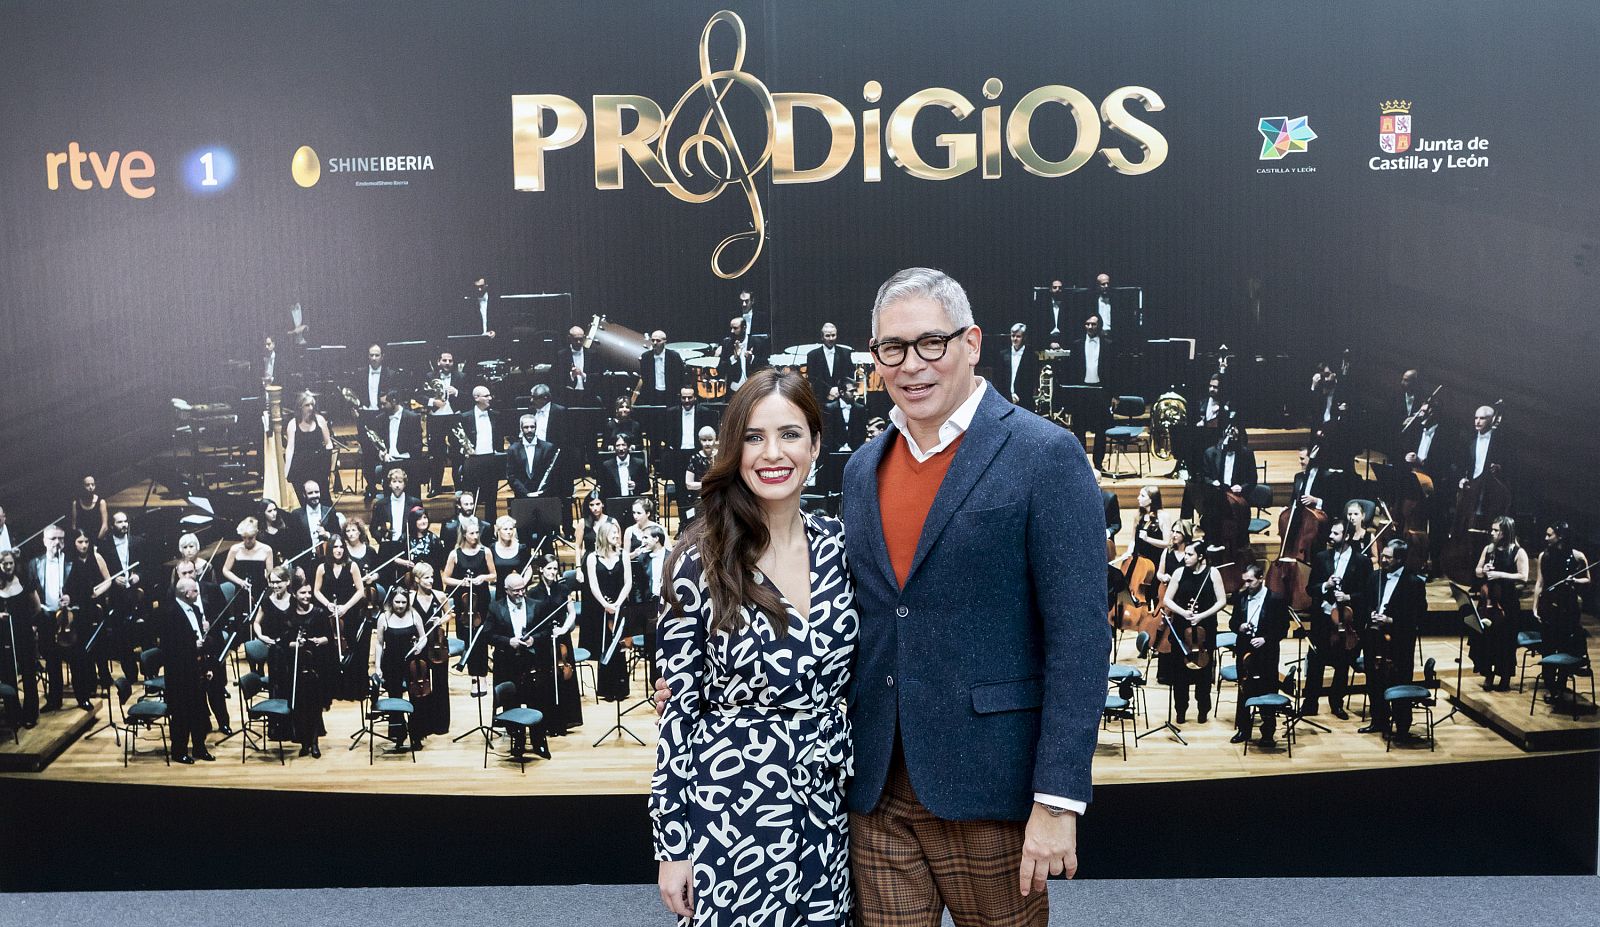 Paula Prendes y Boris Izaguirre, presentadores de 'Prodigios'